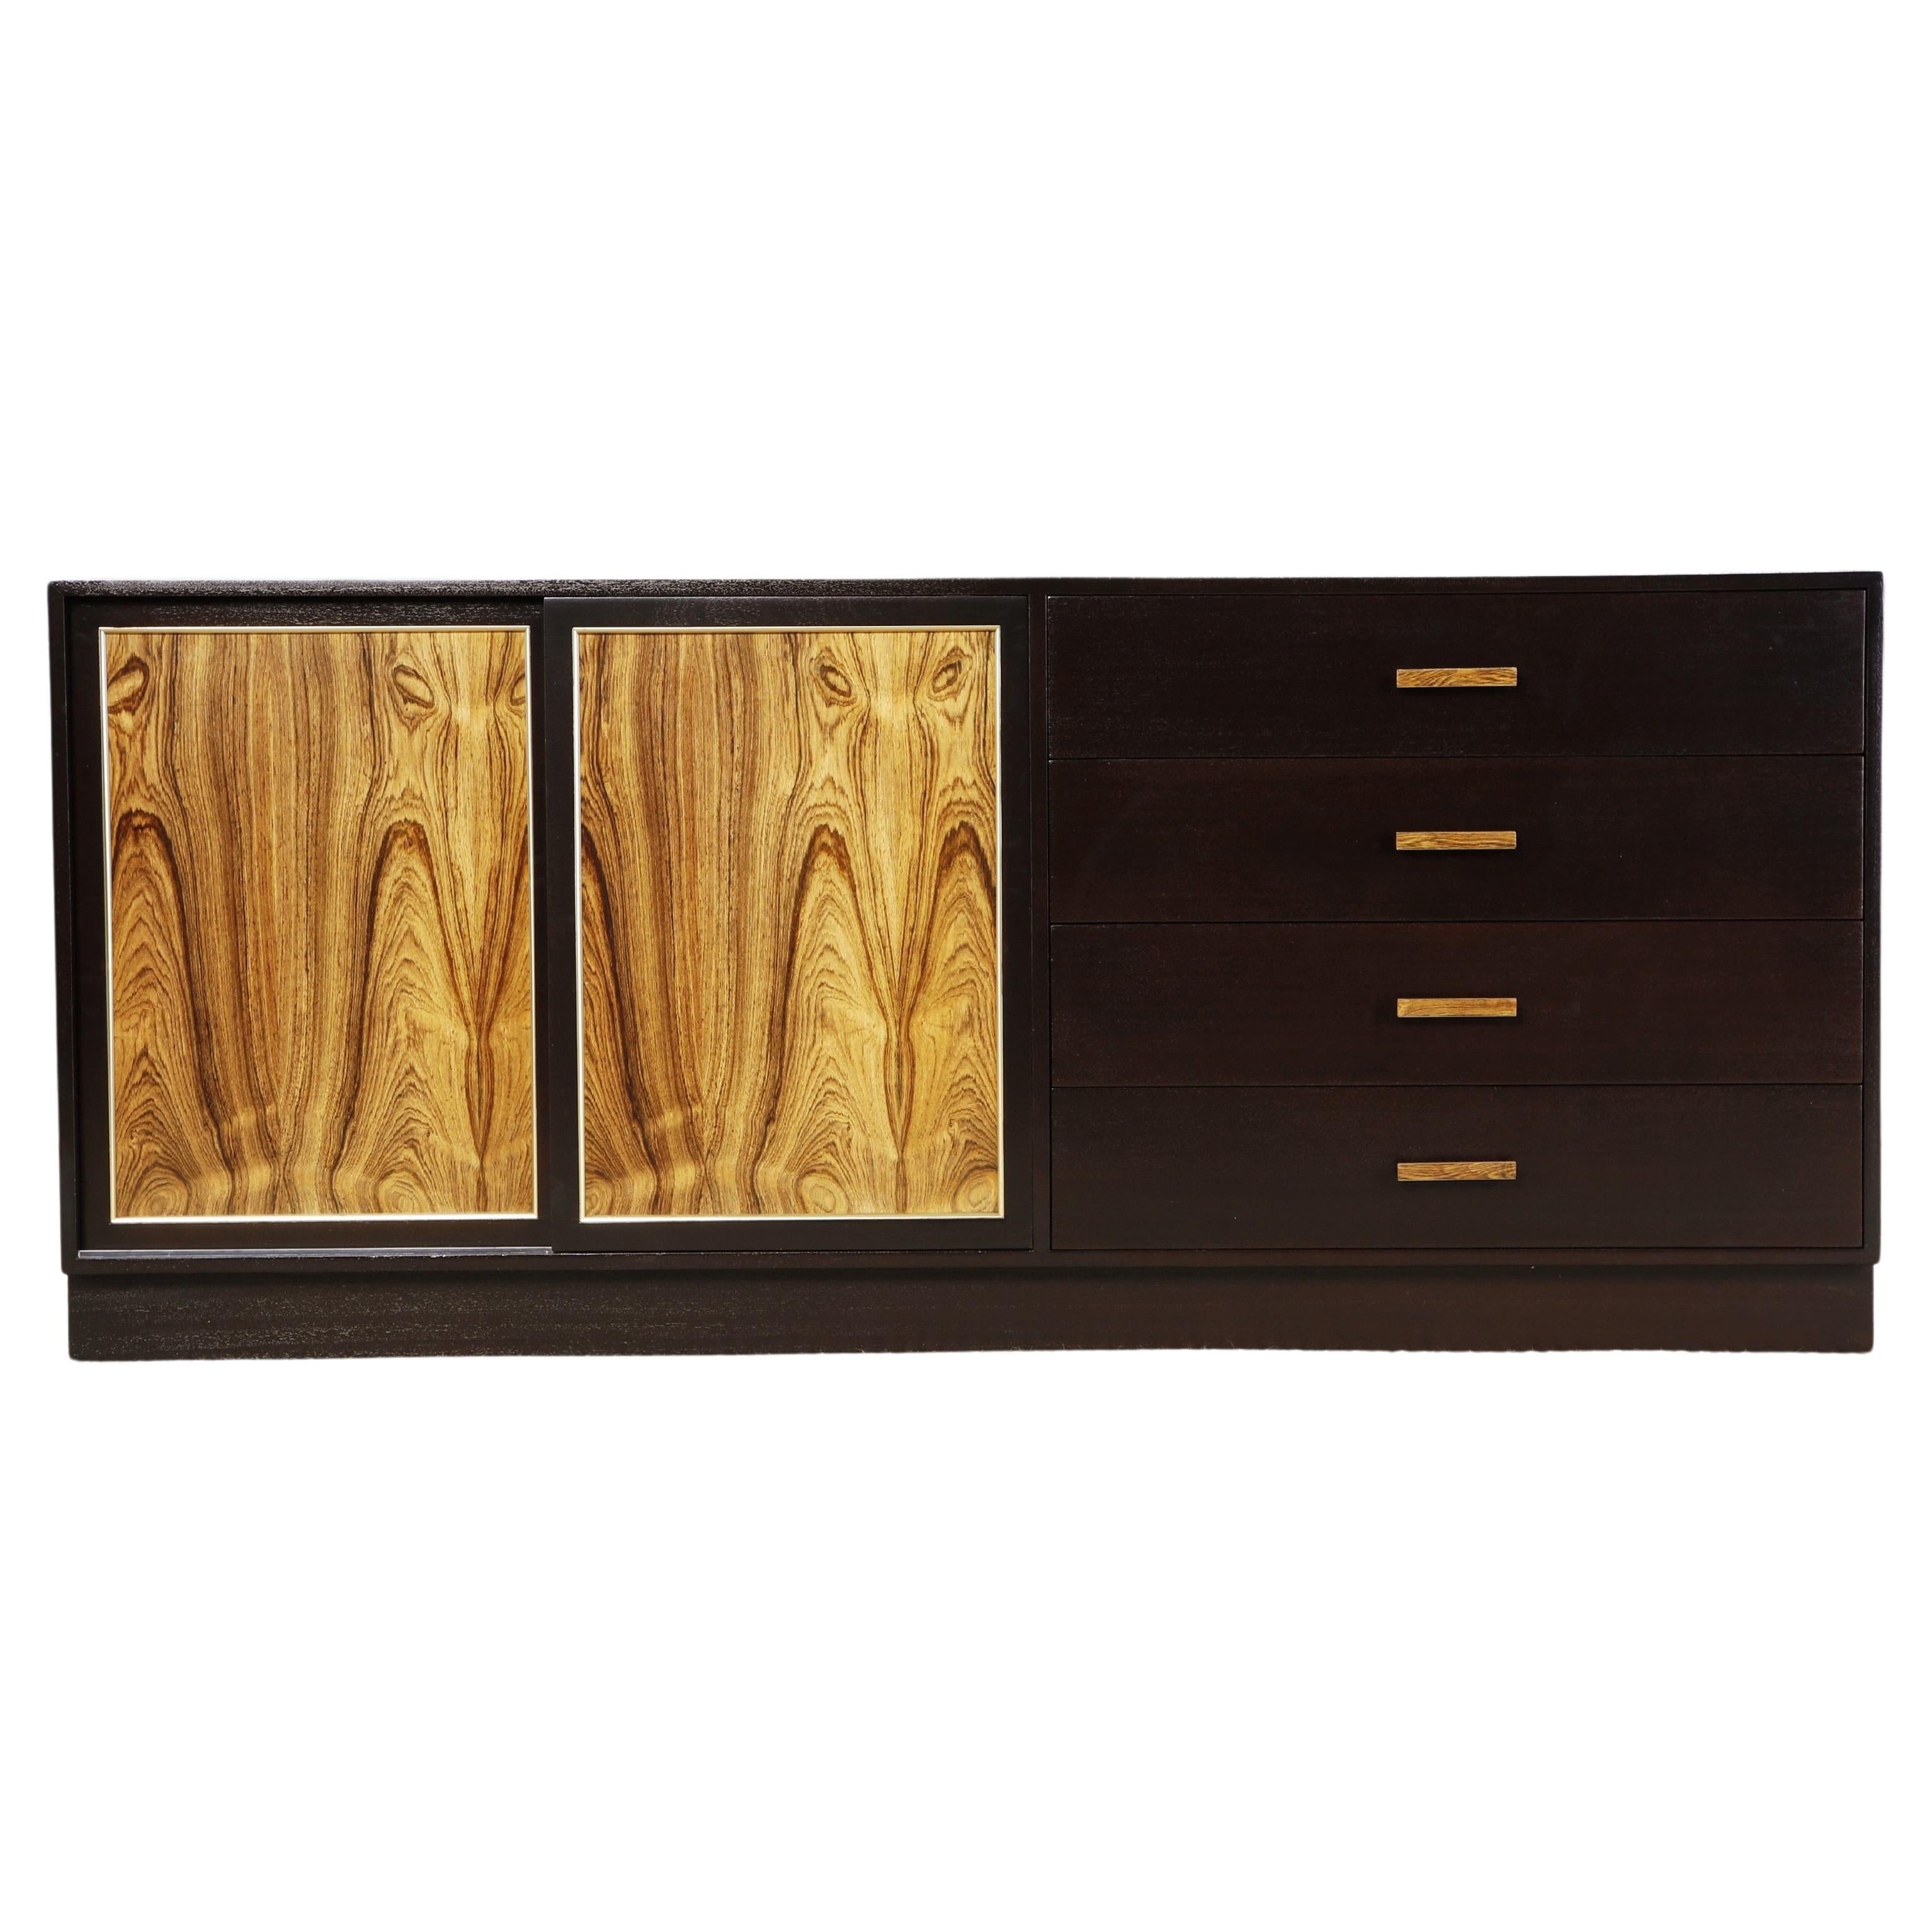 Harvey Probber Dresser, Credenza or Sideboard, c 1960, Refinished, Signed For Sale